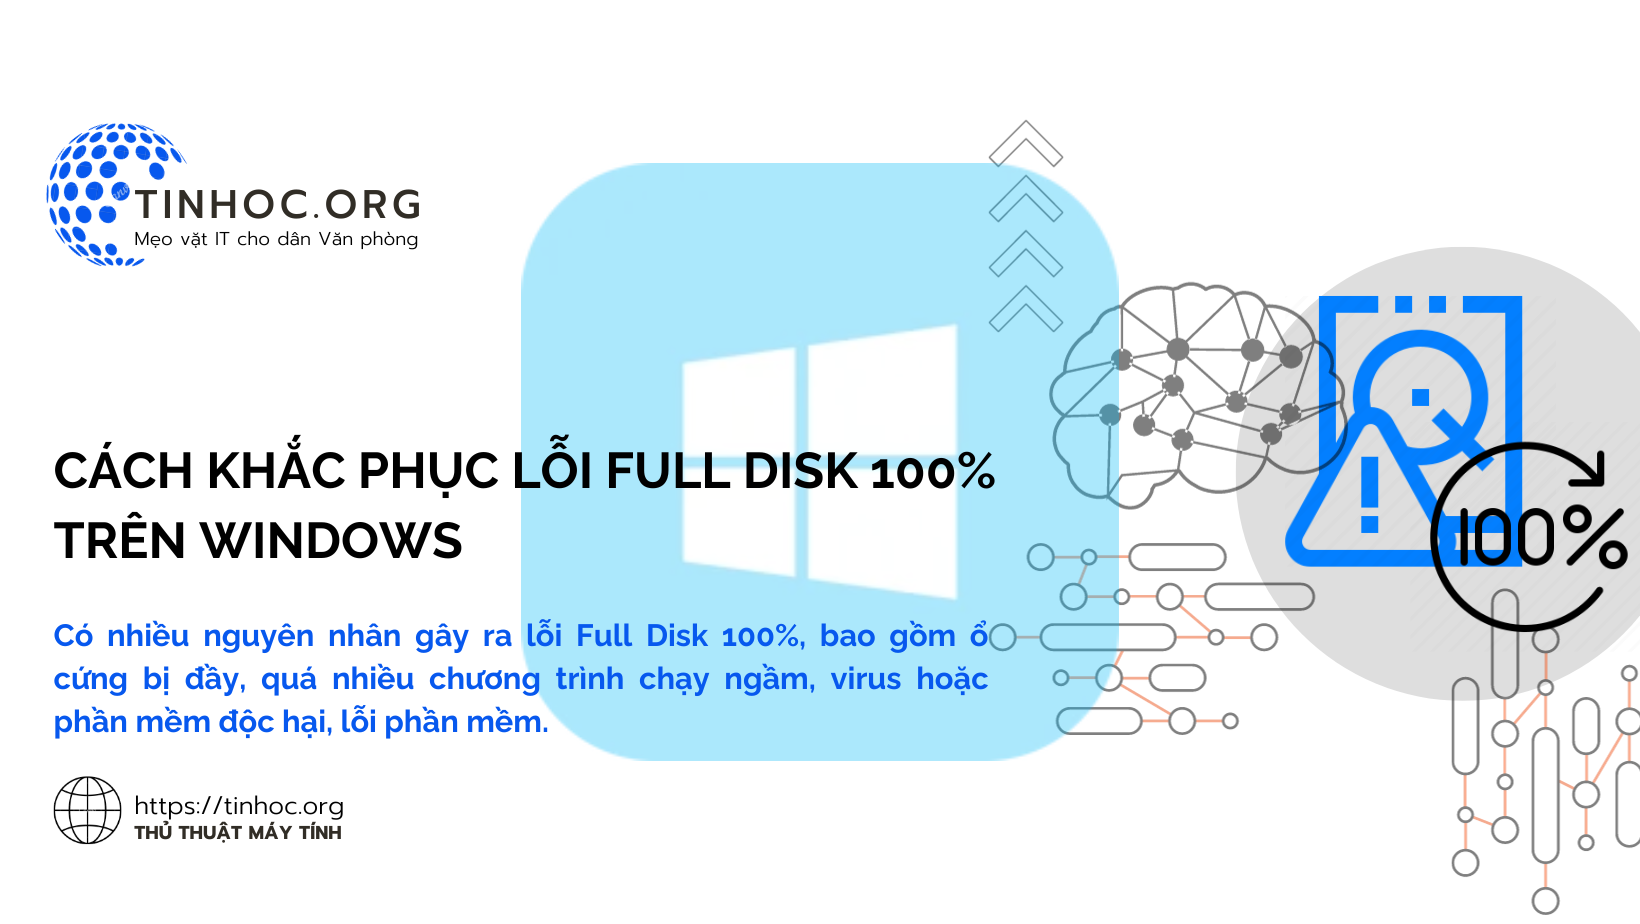 Cách khắc phục lỗi Full Disk 100% trên Windows